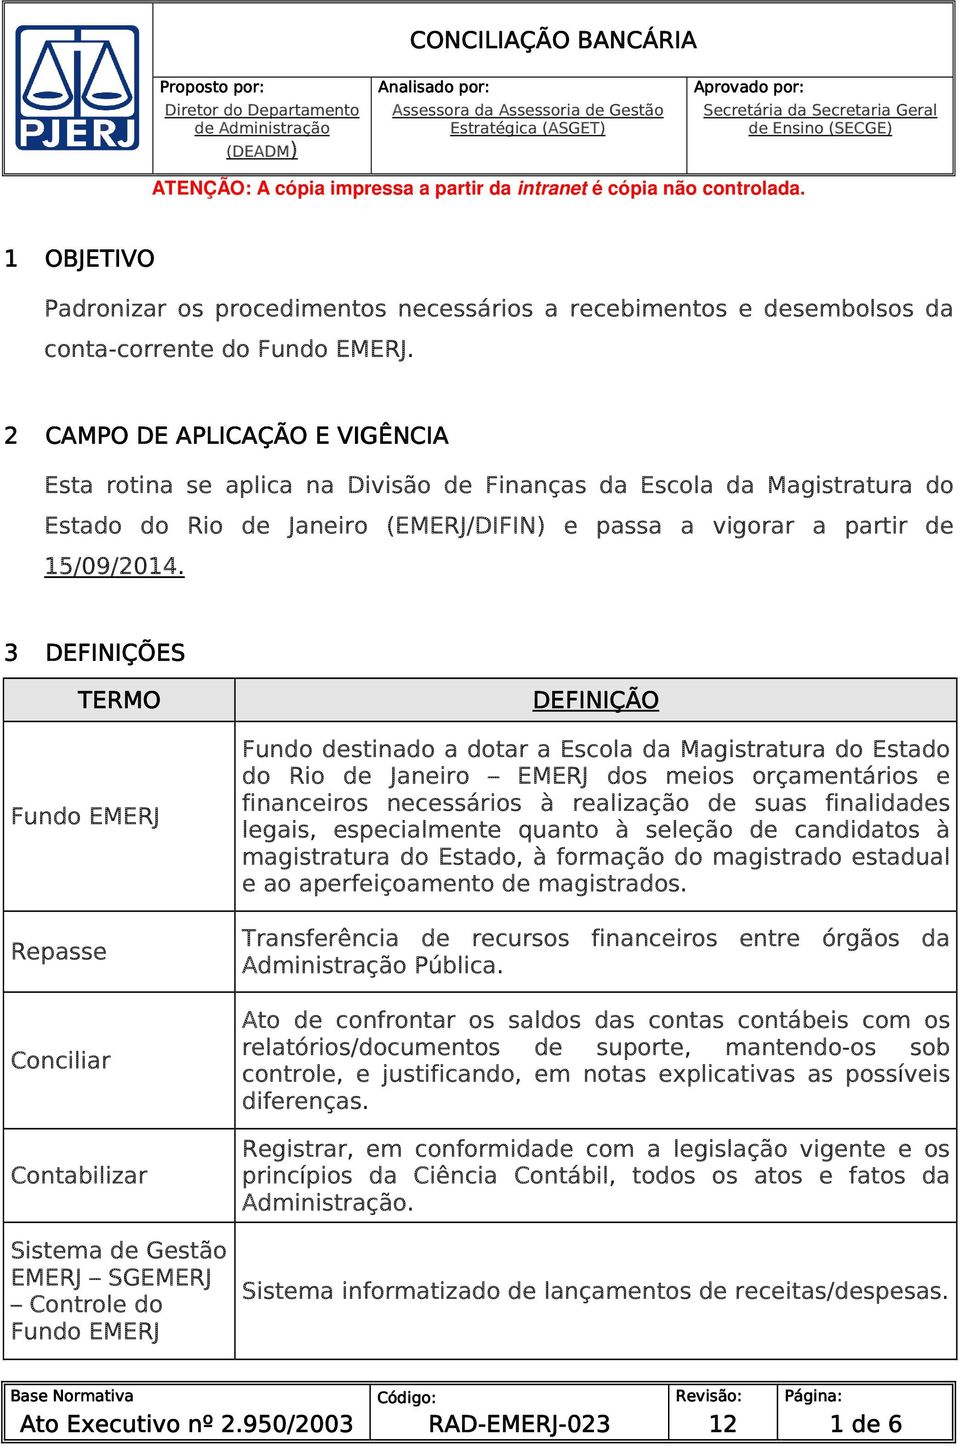 2 CAMPO DE APLICAÇÃO E VIGÊNCIA Esta rotina se aplica na Divisão de Finanças da Escola da Magistratura do Estado do Rio de Janeiro (EMERJ/DIFIN) e passa a vigorar a partir de 15/09/2014.